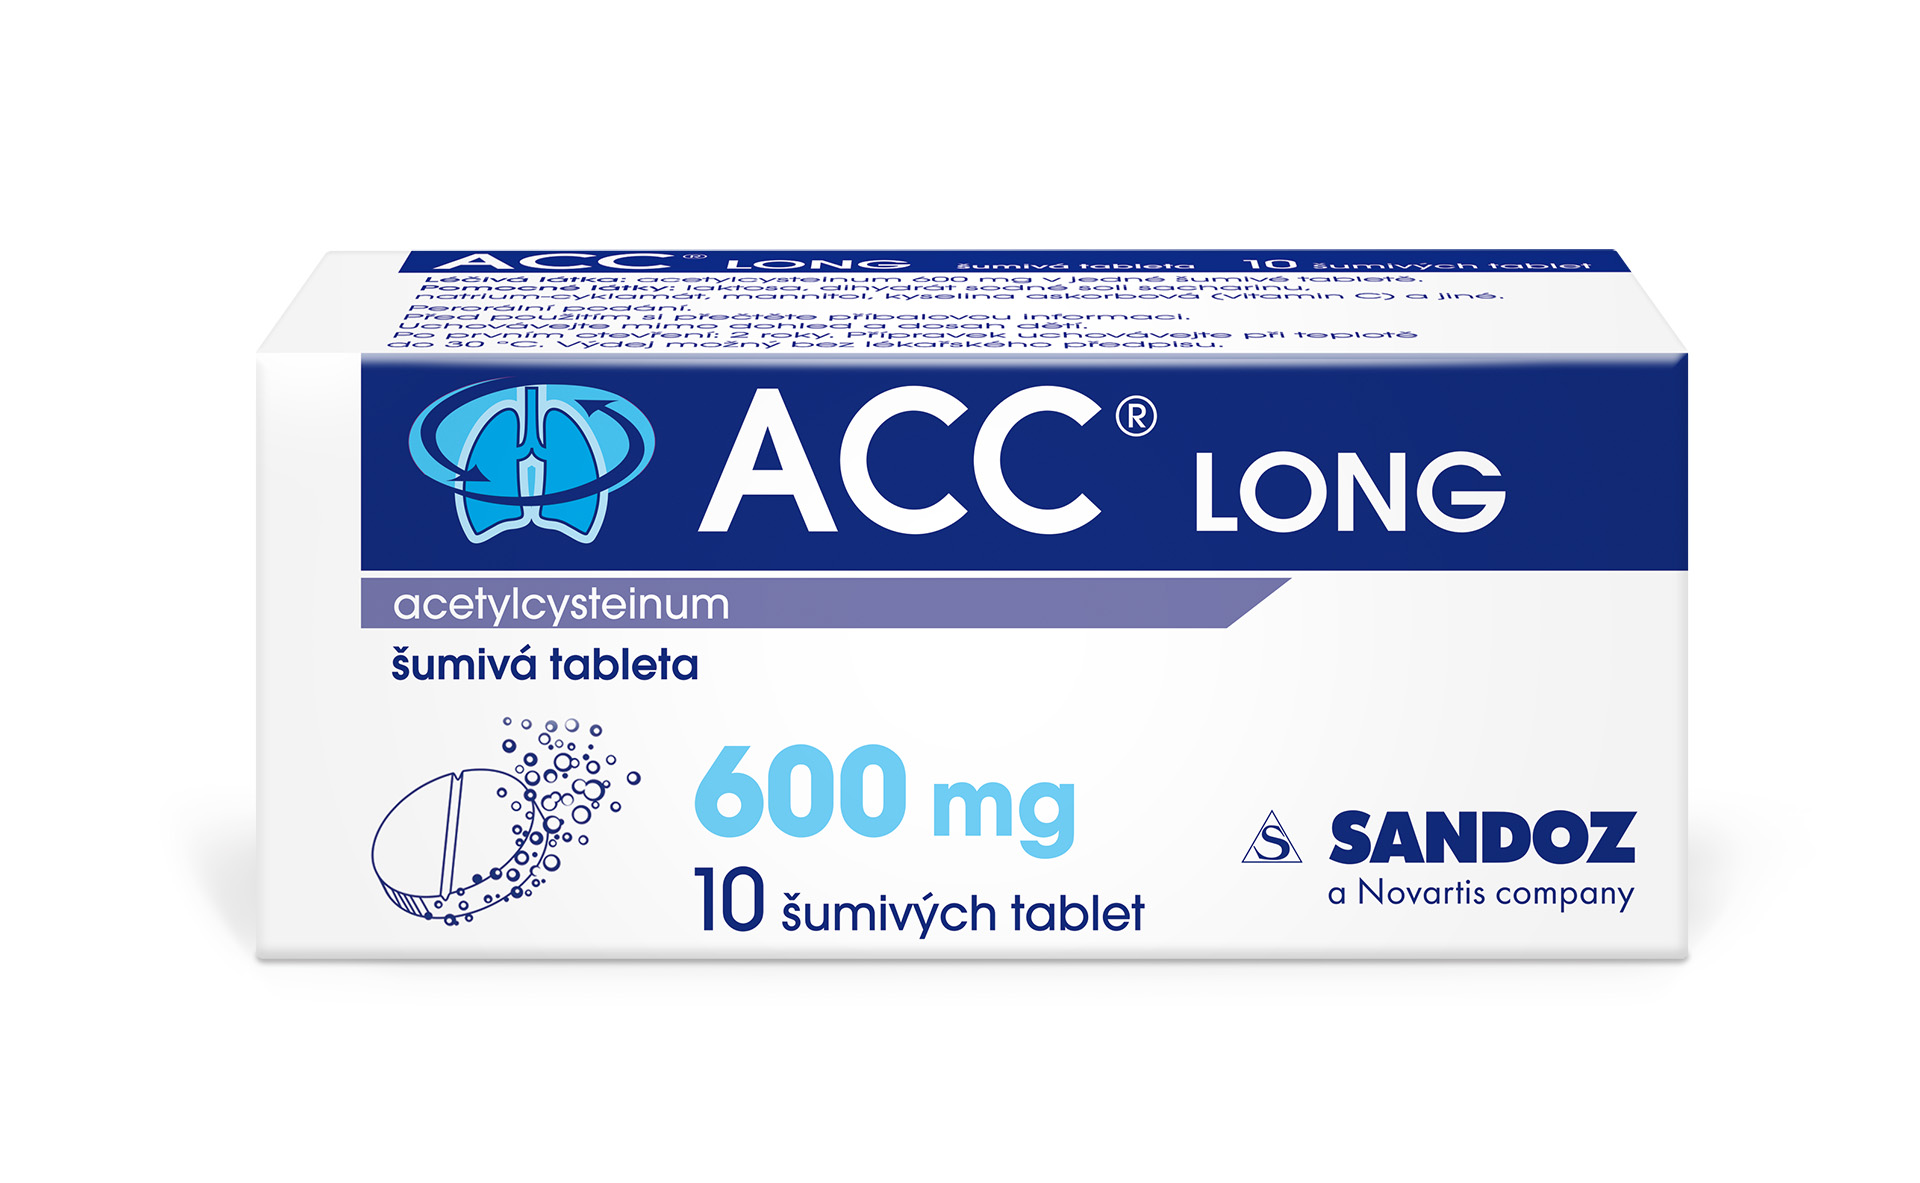 ACC LONG 600 mg 10 šumivých tablet ACC